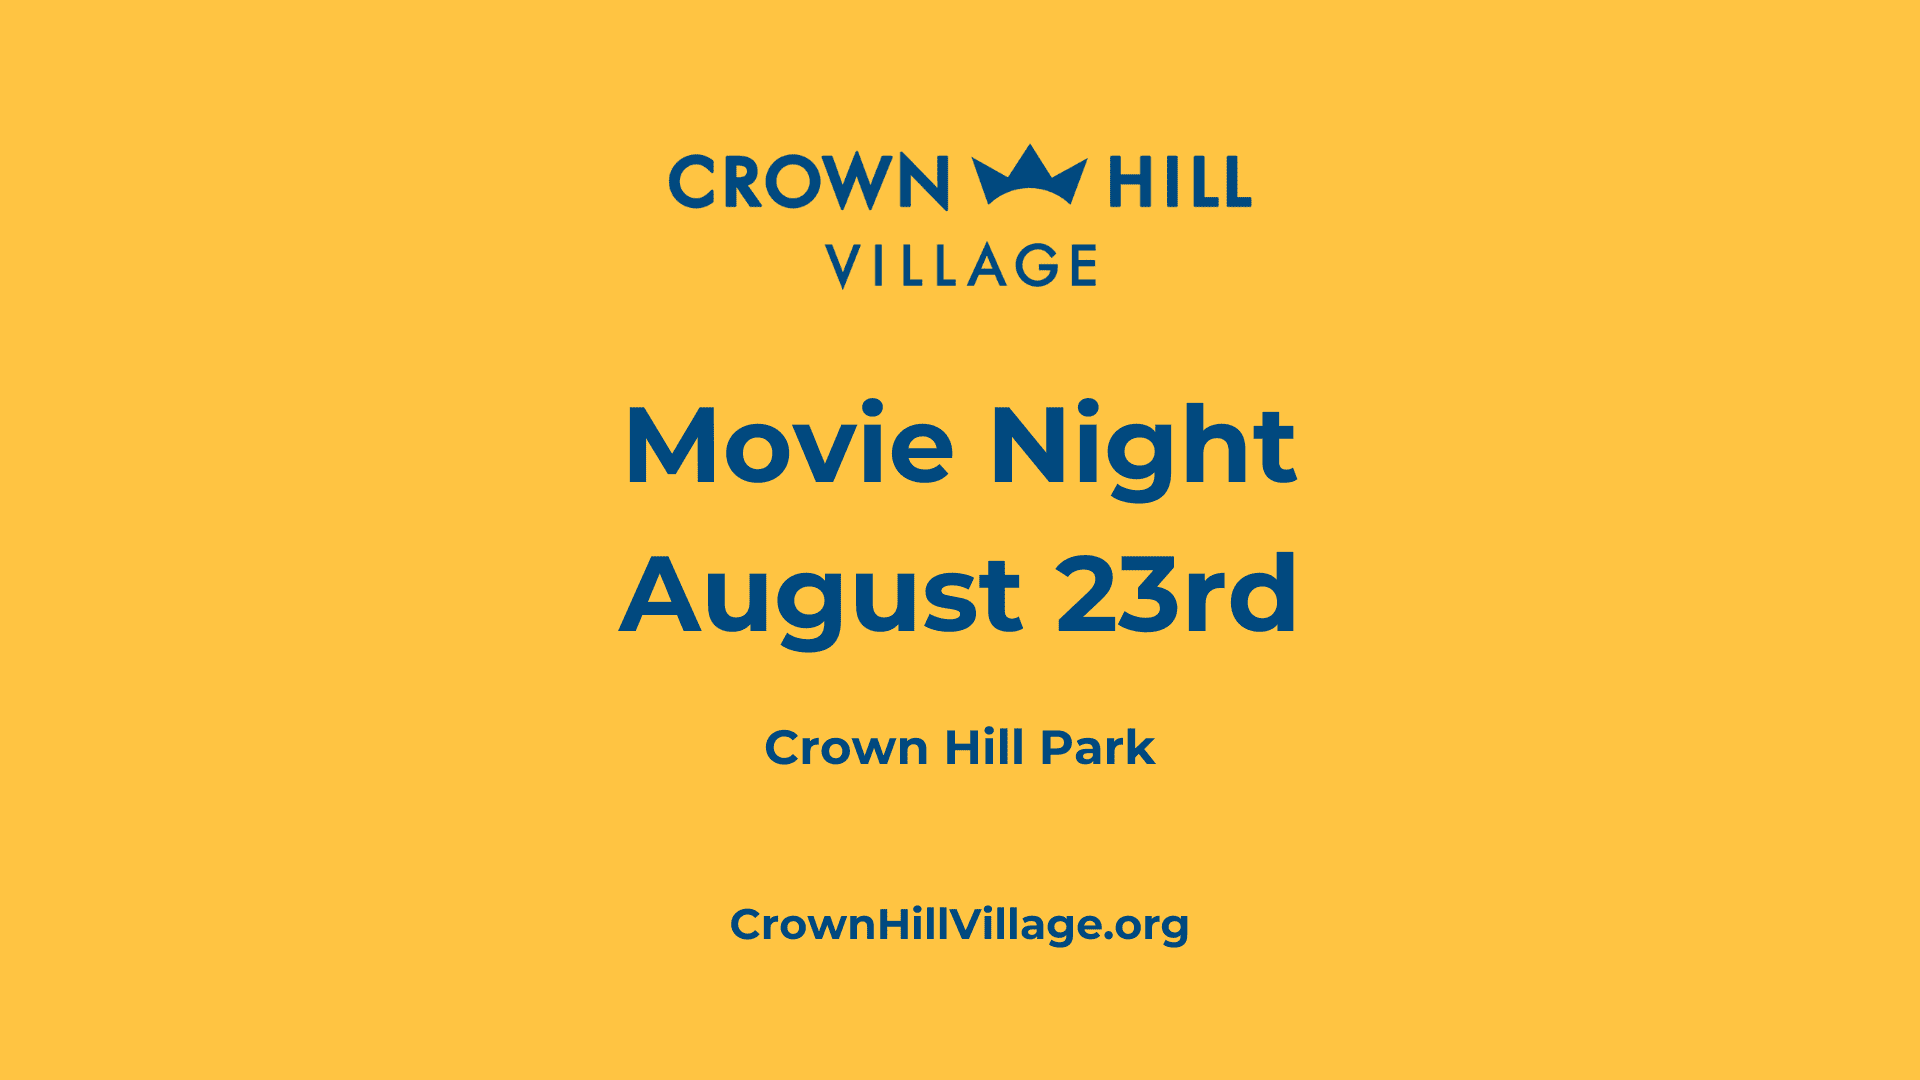 Crown Hill Village Movie Night on August 23